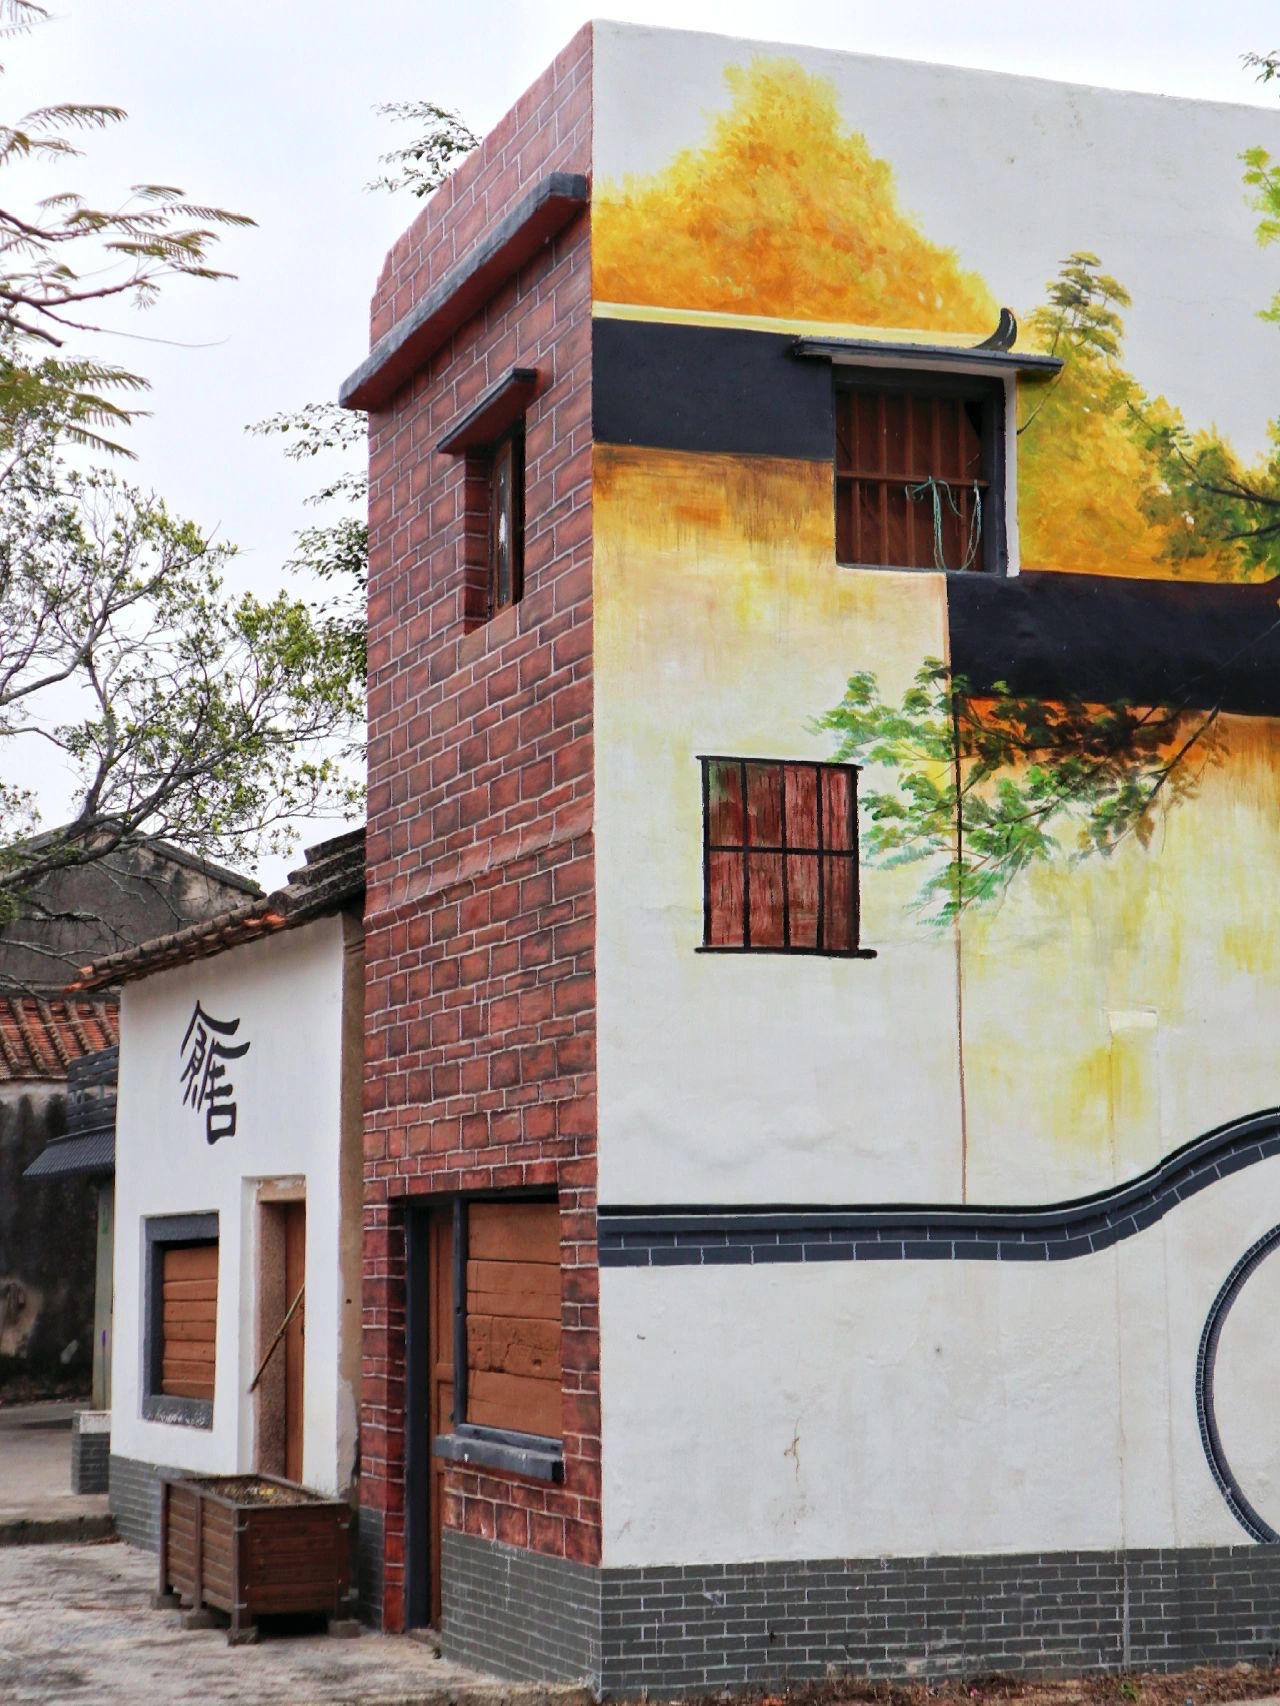 这应该是汕头最有诗意的壁画艺术村落吧🖼